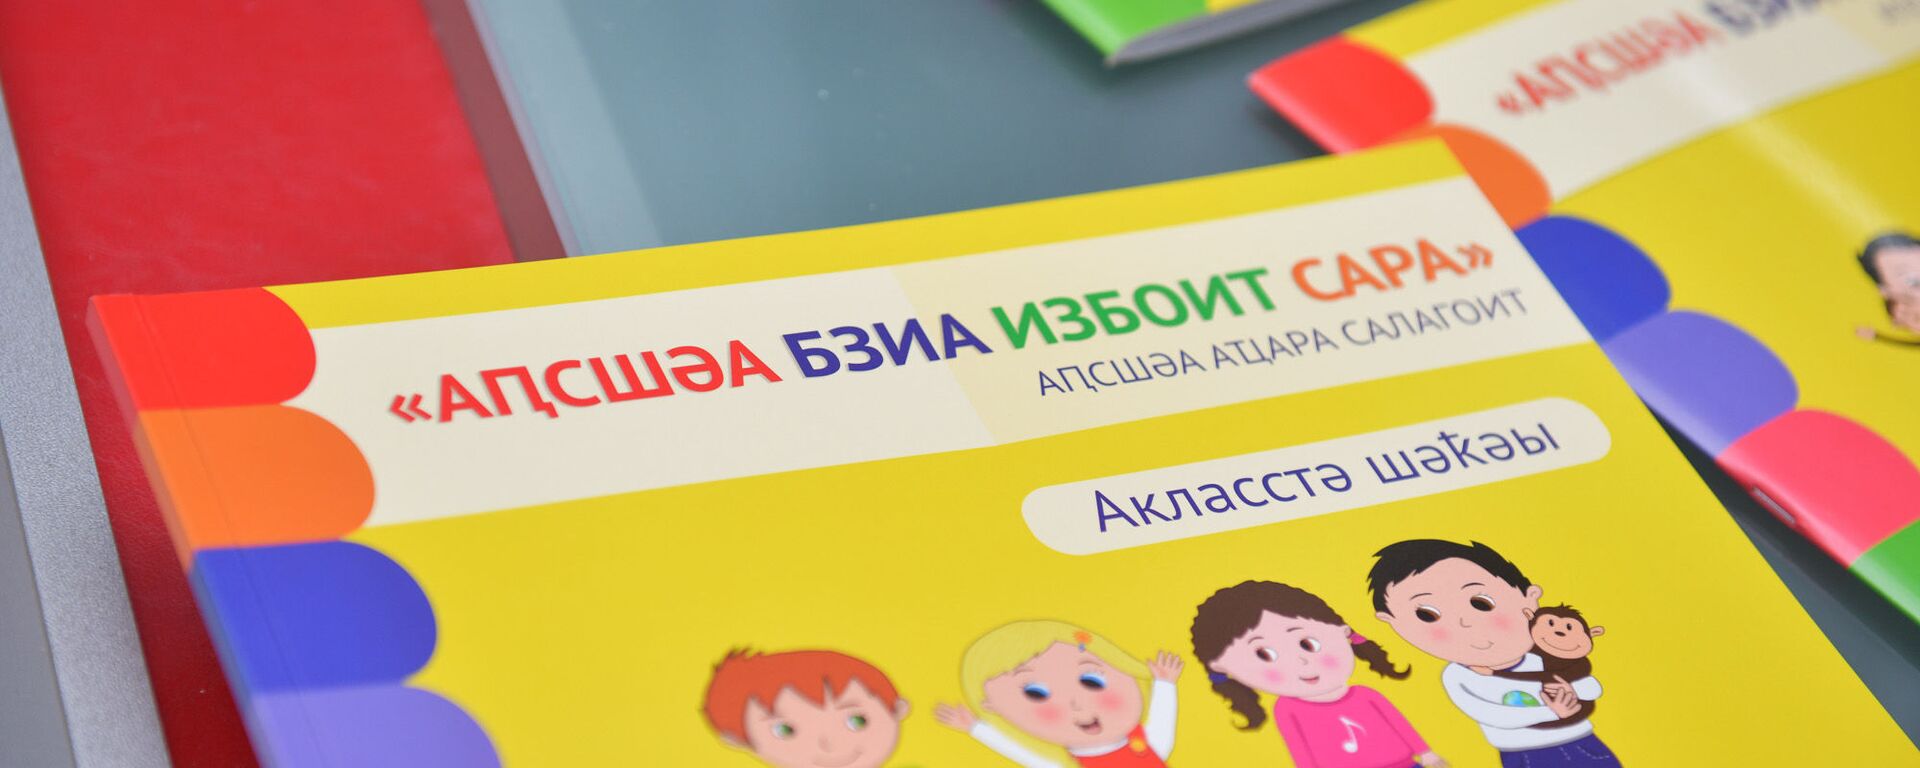 Презентация новой методики по изучению абхазского языка для 3х-летних детей - Sputnik Абхазия, 1920, 25.08.2020